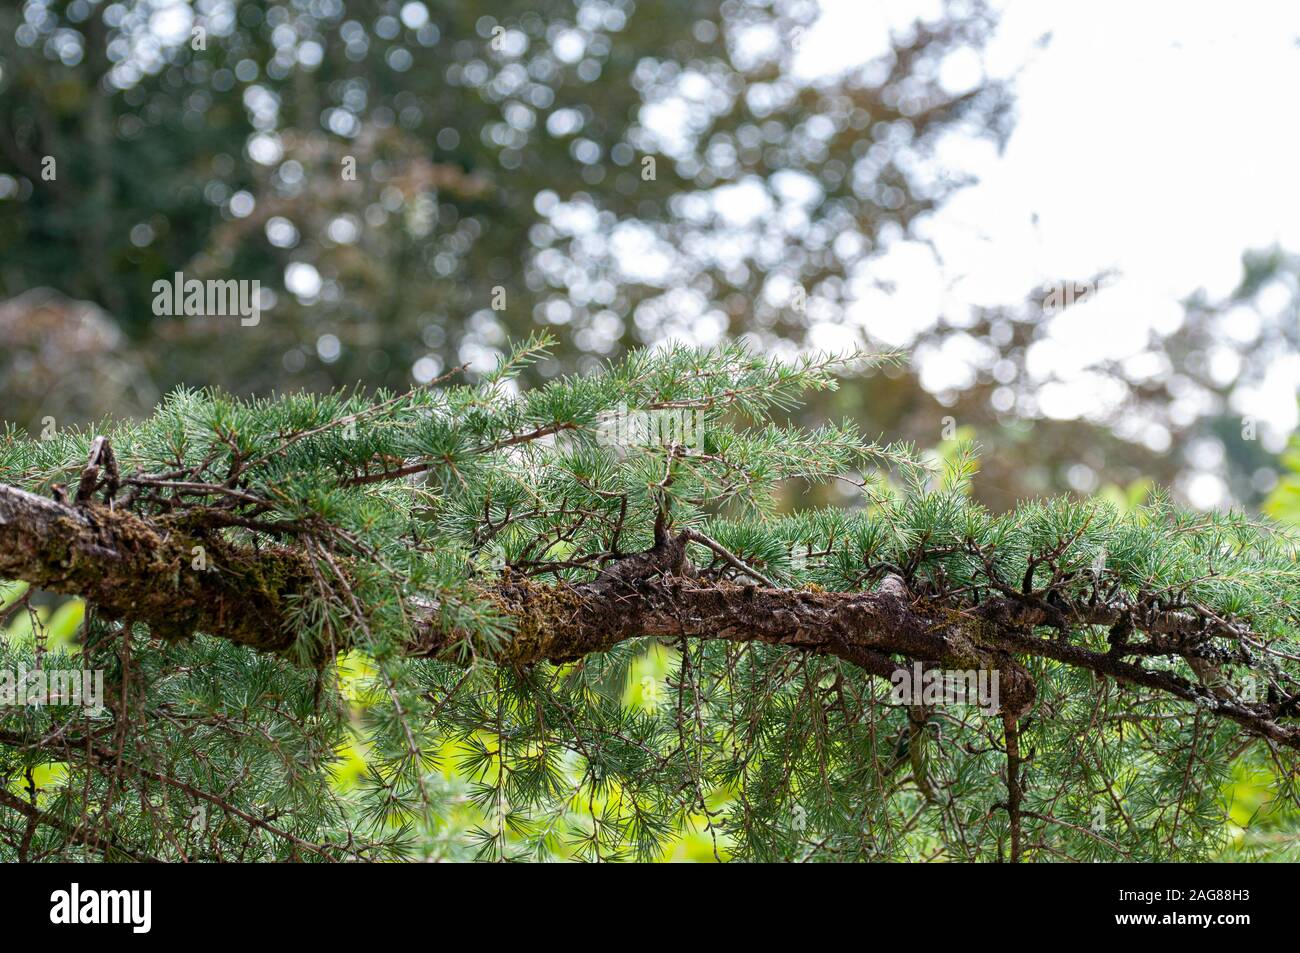 Cedrus deodara, the deodar cedar, Himalayan cedar, or deodar/devdar/devadar/devadaru, is a species of cedar native to the western Himalayas Photograph Stock Photo